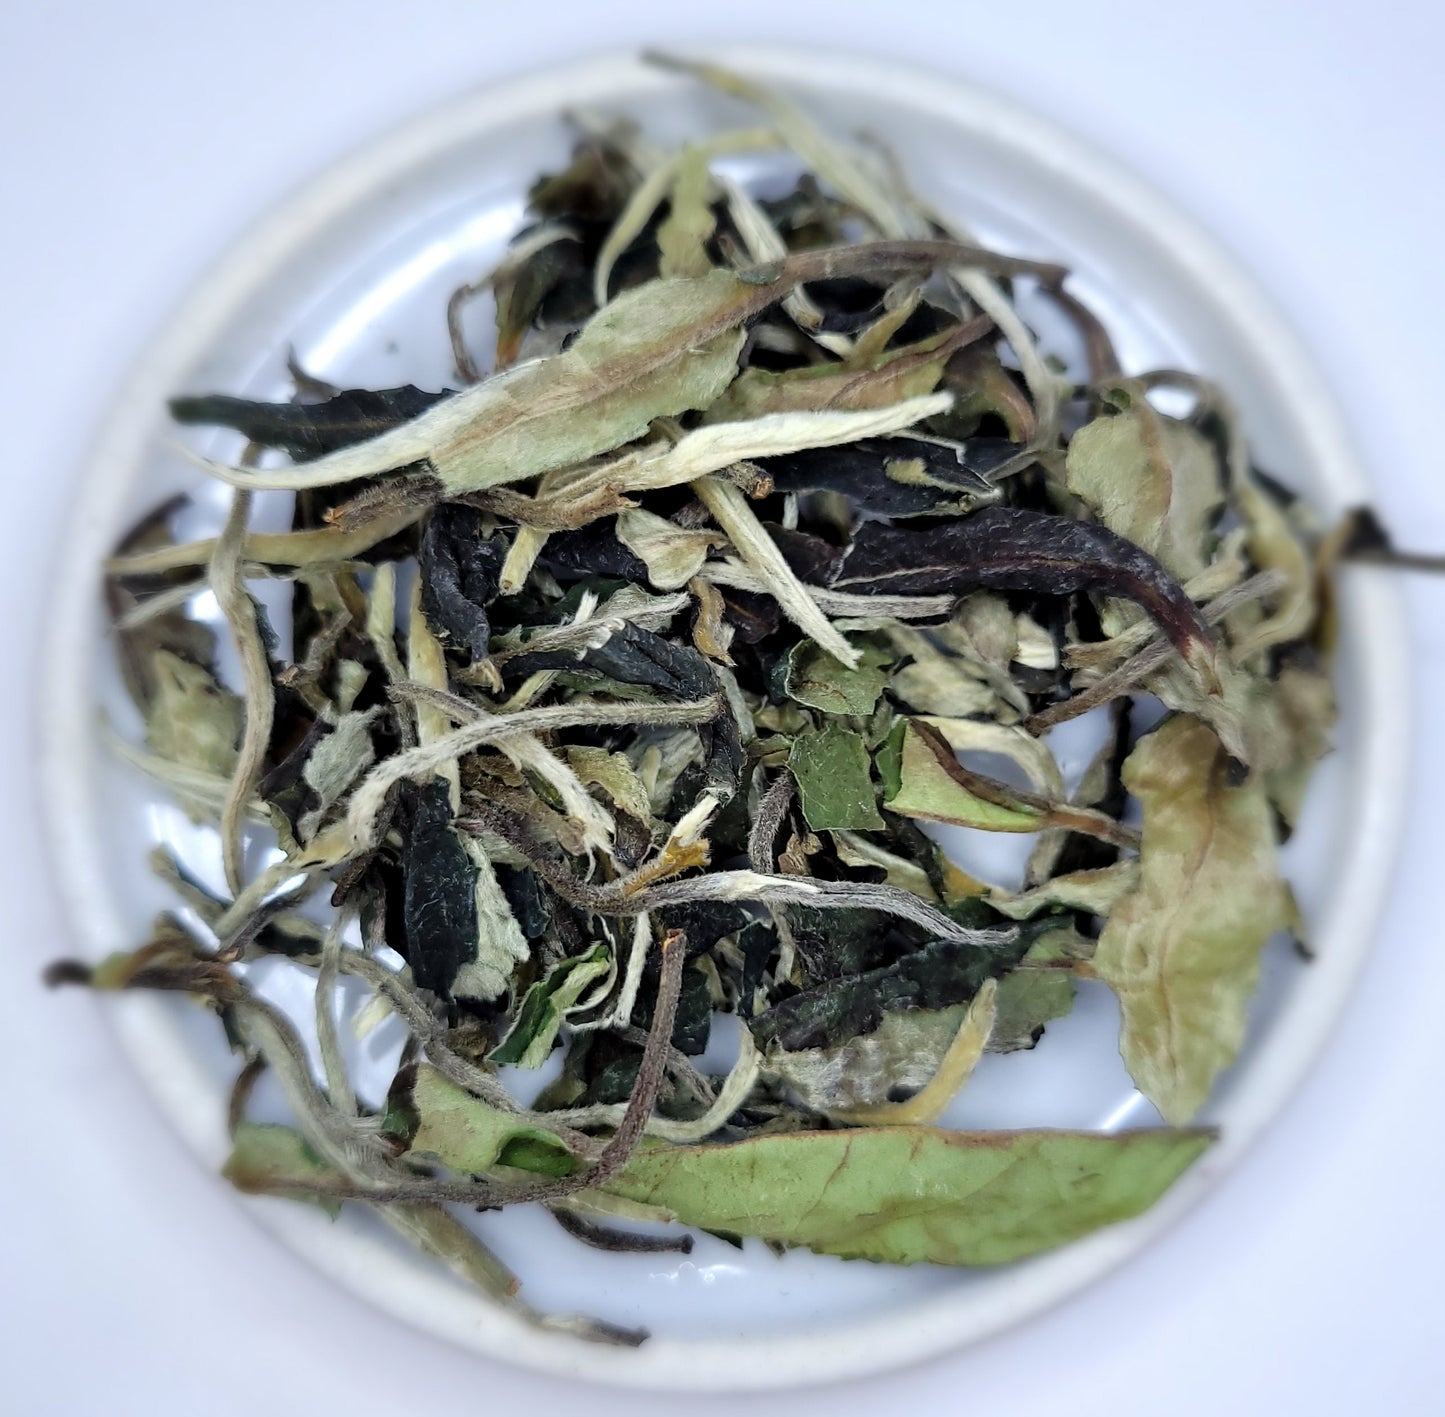 Pai Mu Tan White Tea